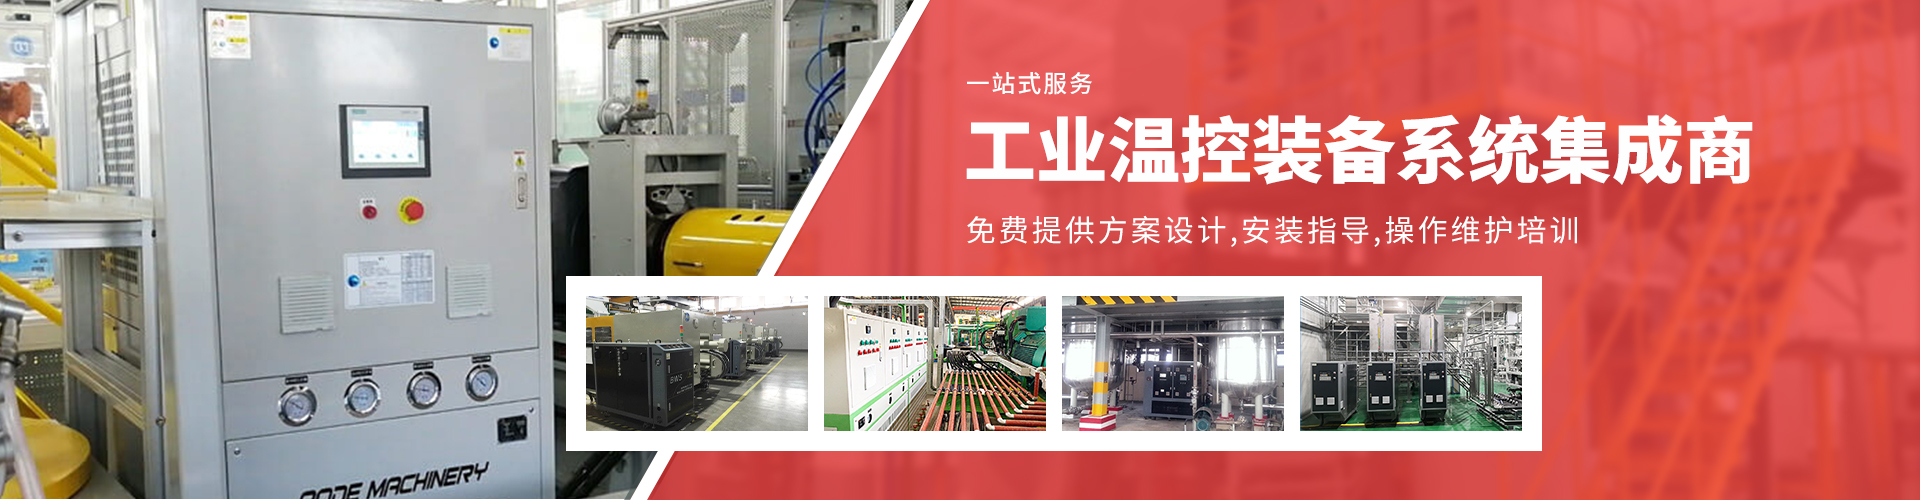 深圳市奥德机械有限公司五大生产基地-专注高端工业温度控制